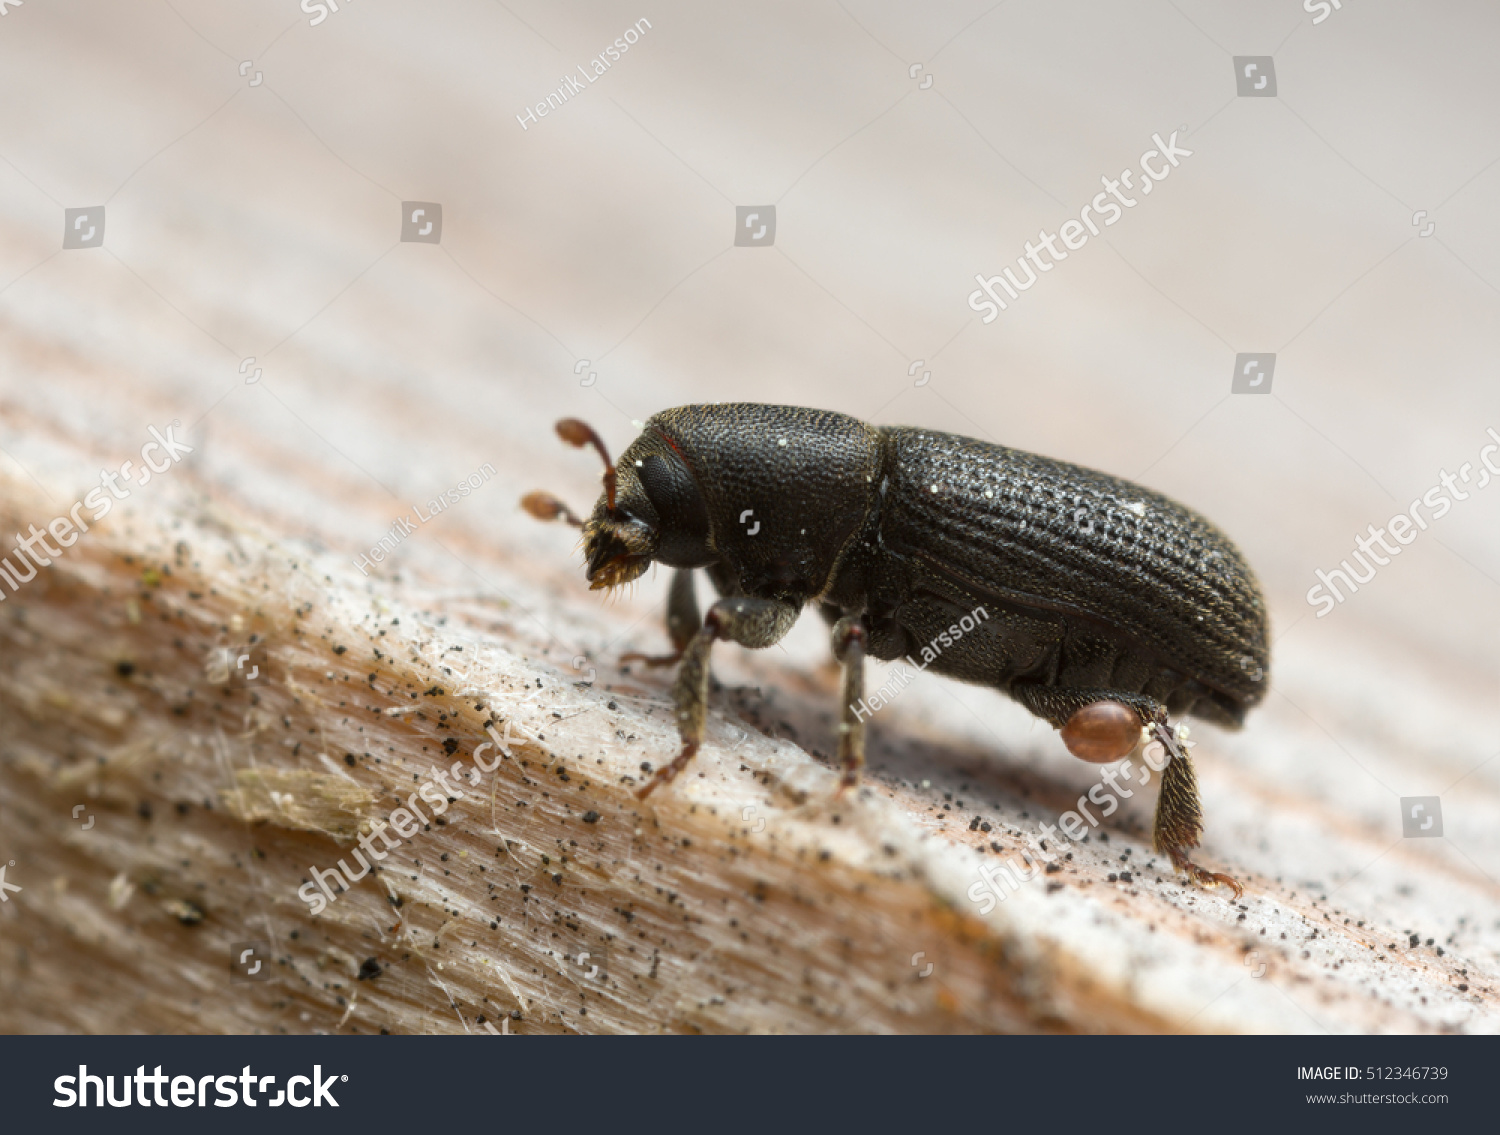 Bark beetle, Hylastes beetle on wood #512346739